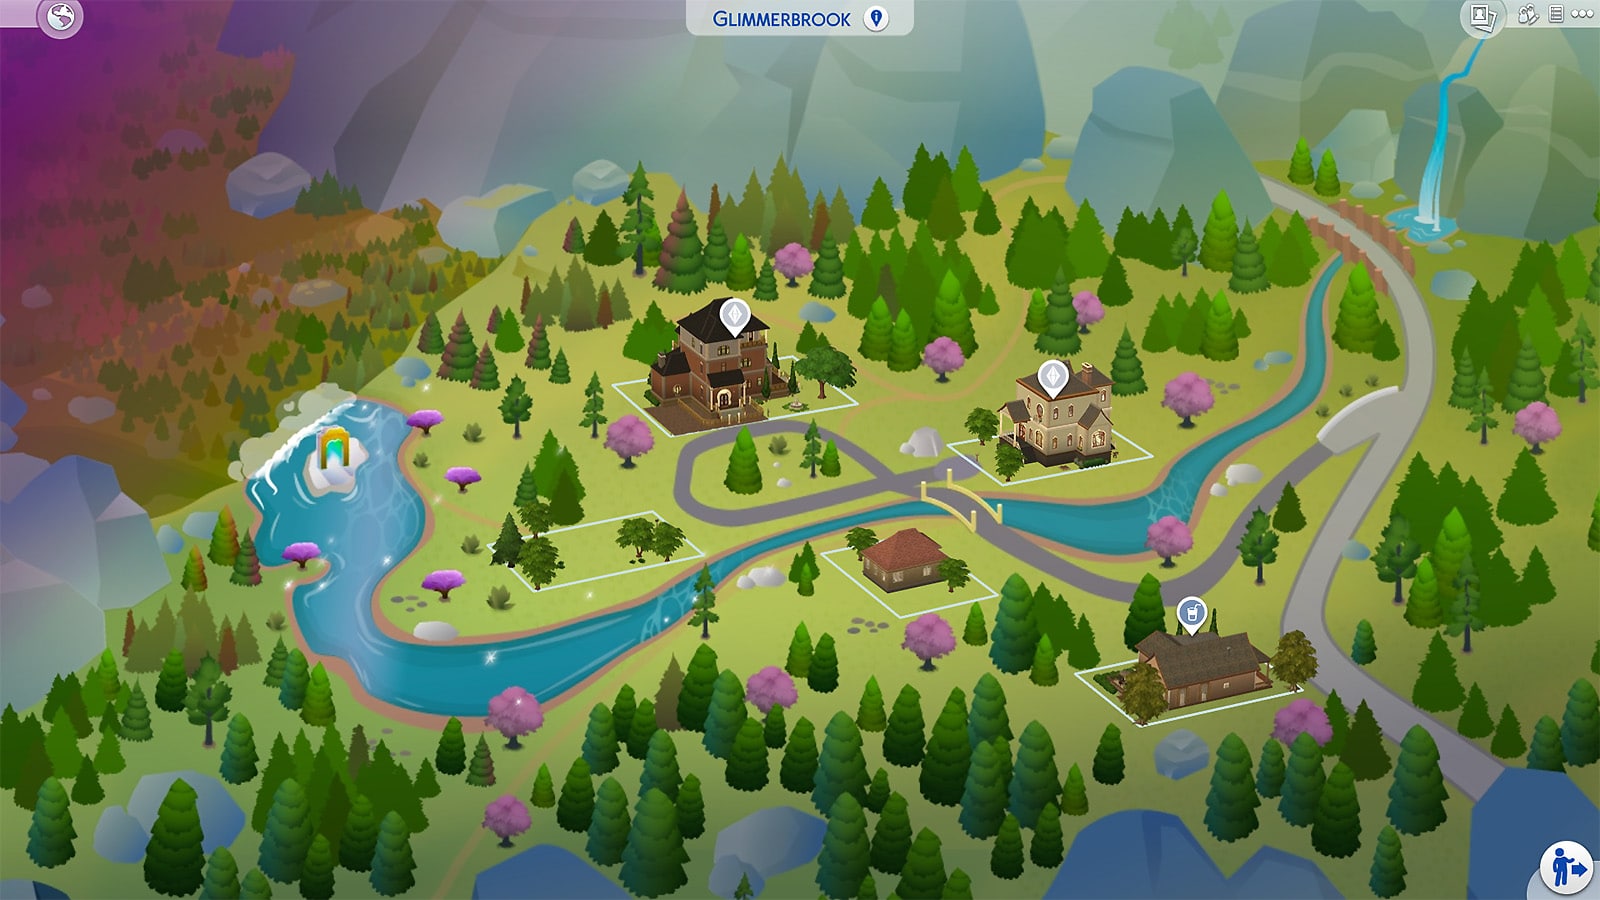 Les Sims 4 Monde Magique - Carte de Glimmerbrook